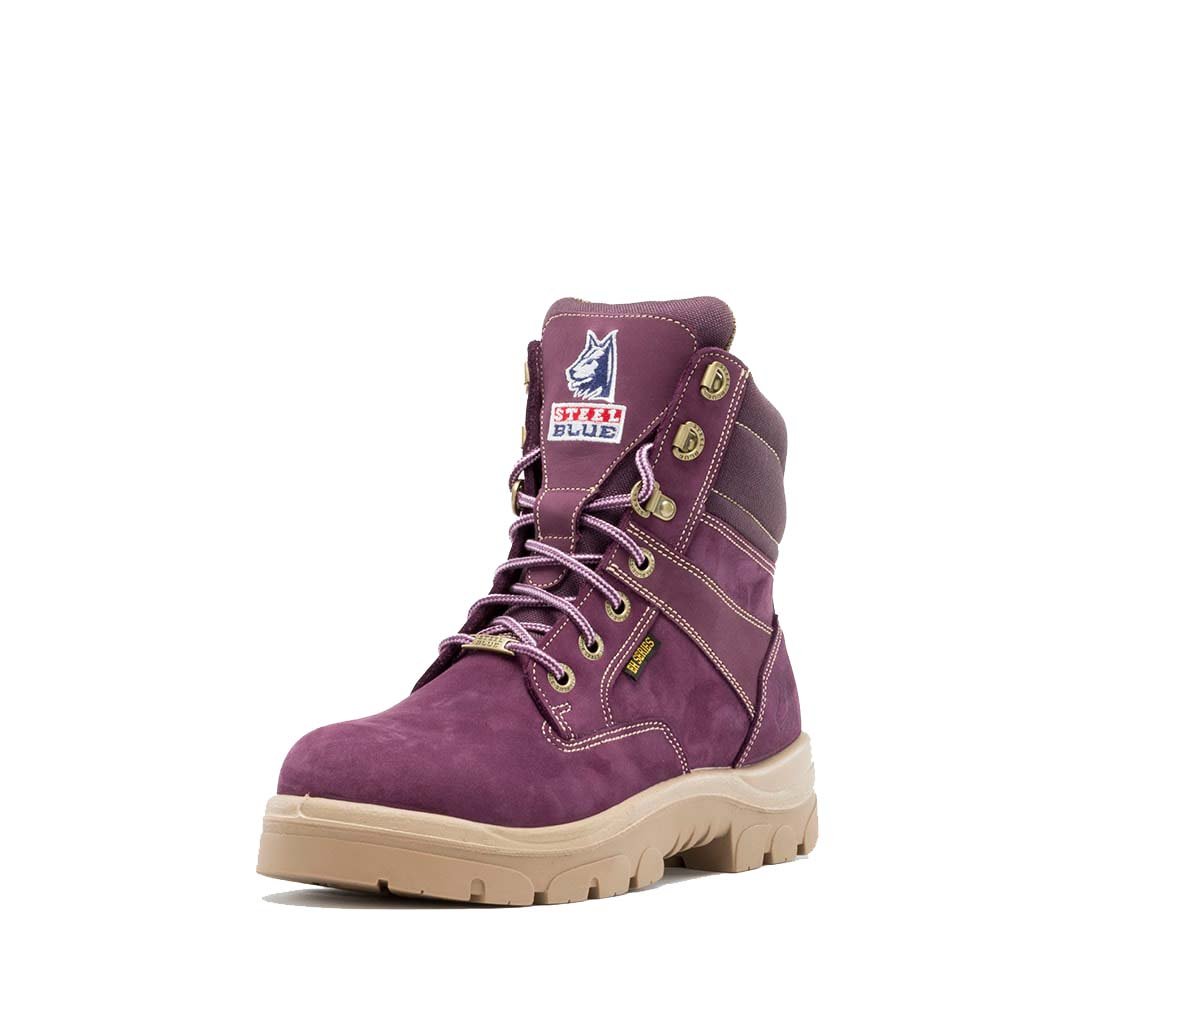 purple steel toe boots